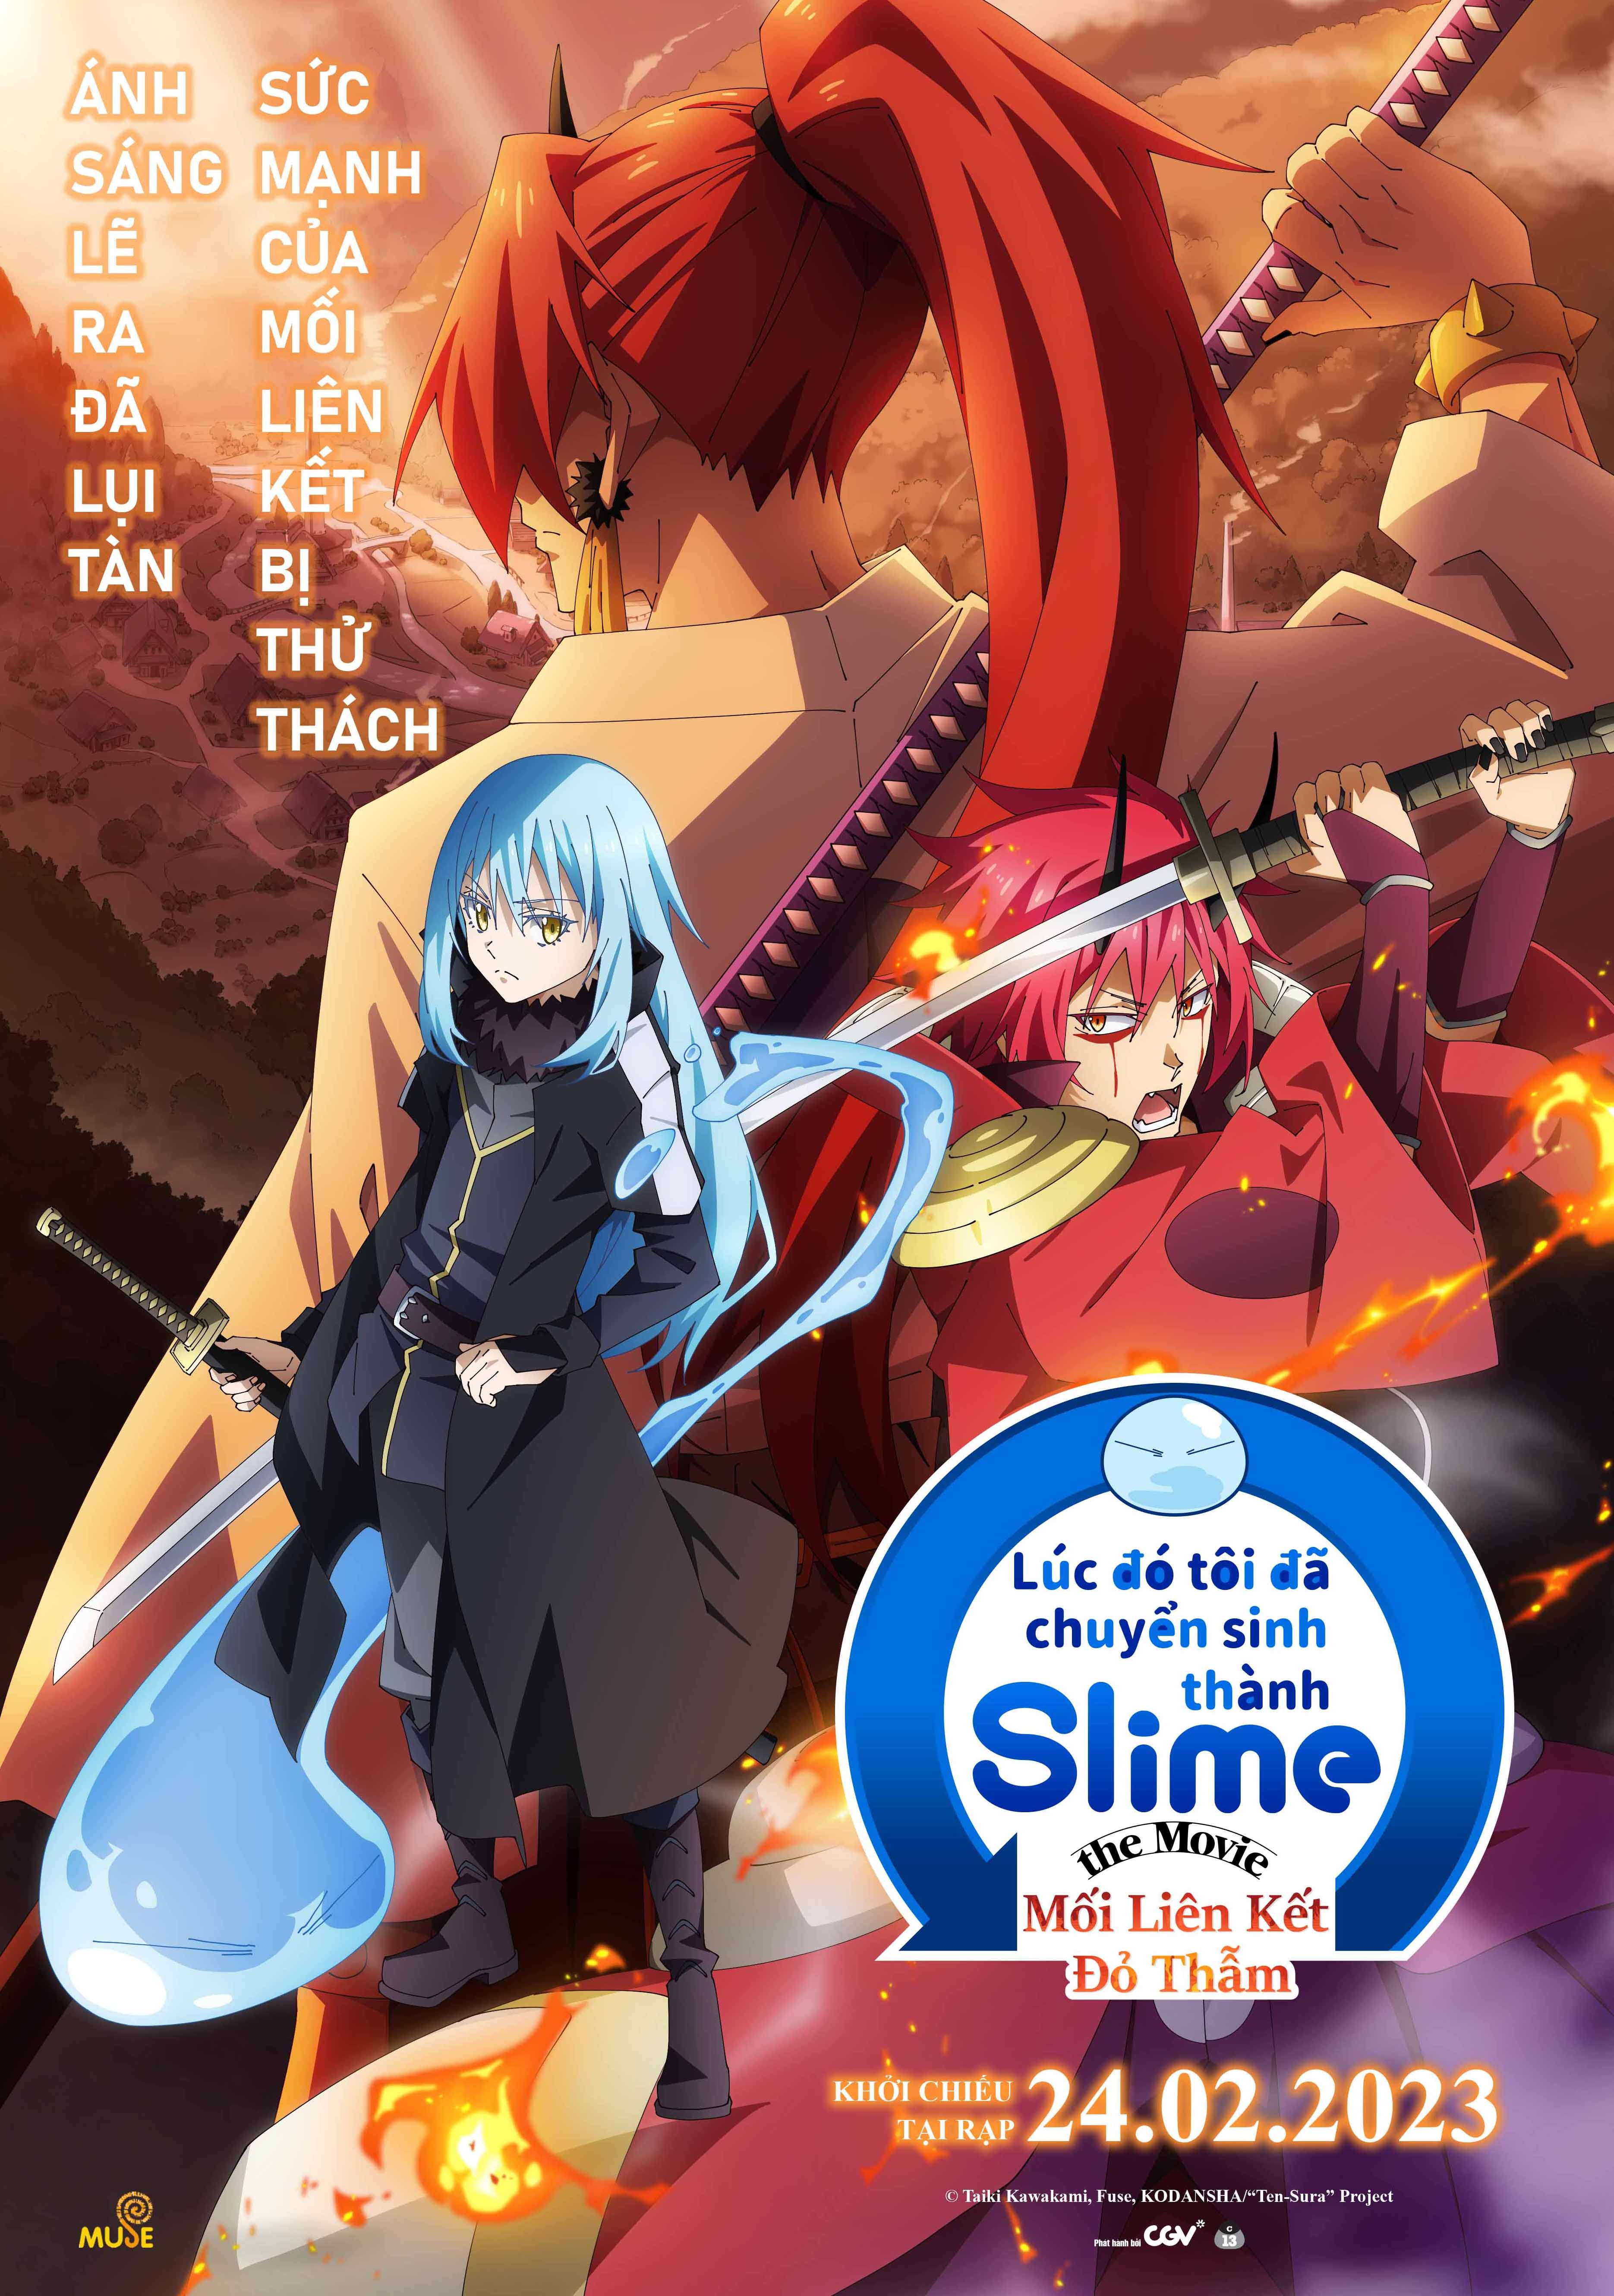 slime-movie-2023-vietnamese-poster-art-2-1677472959.jpg